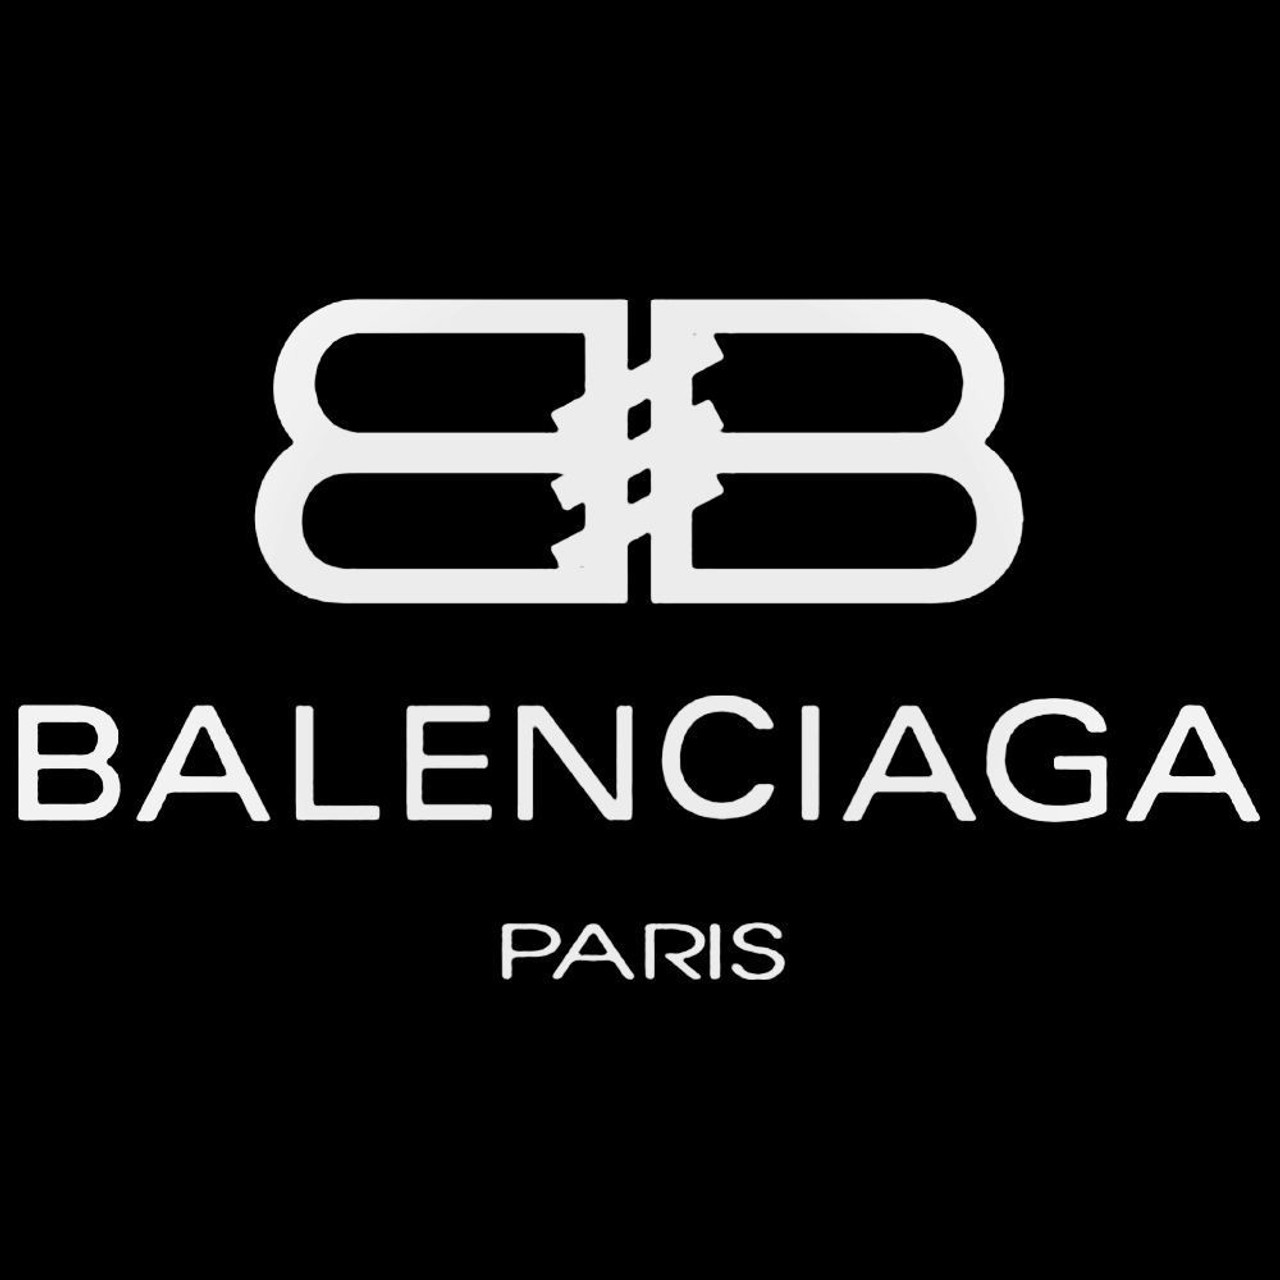 Balenciaga Logo Decal Sticker